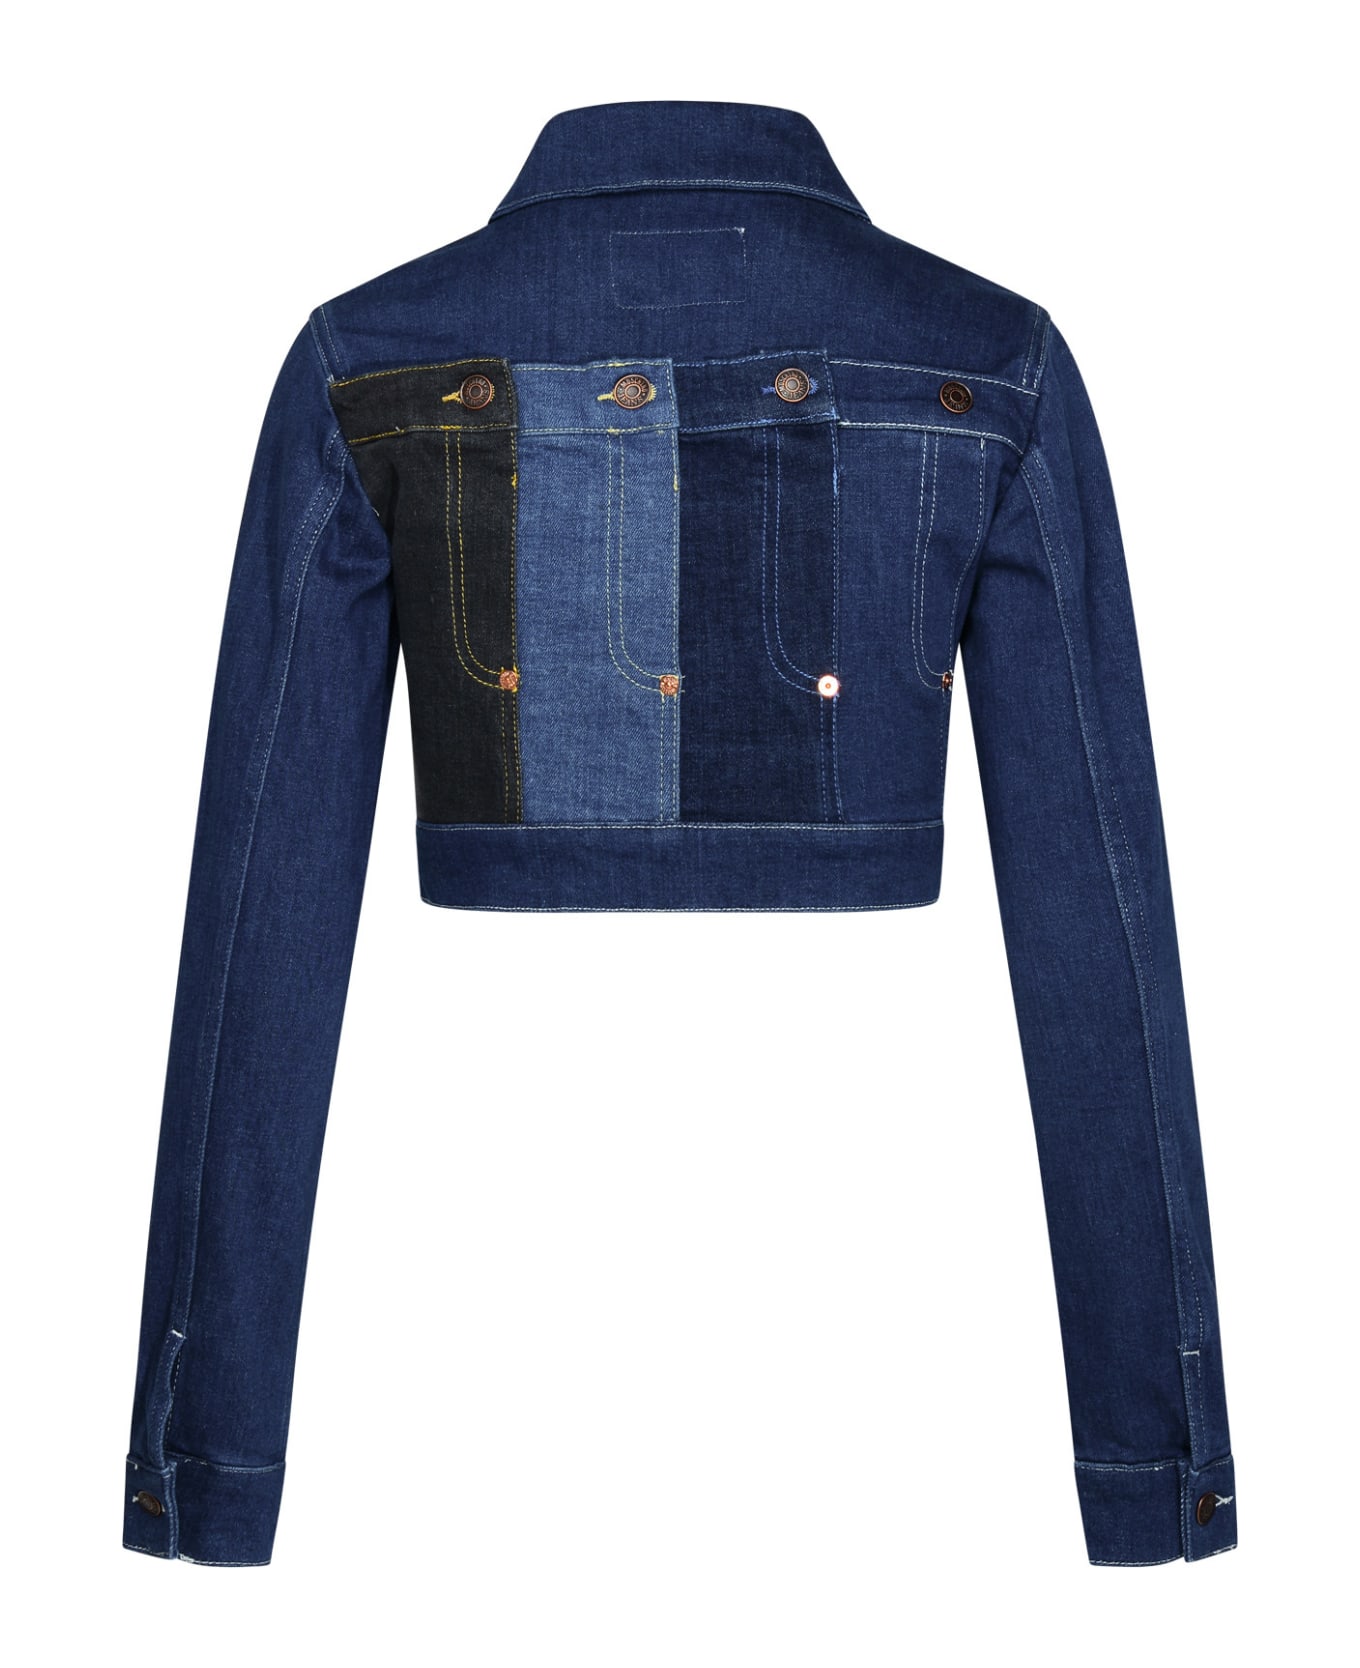 M05CH1N0 Jeans Blue Cotton Jacket - Blue